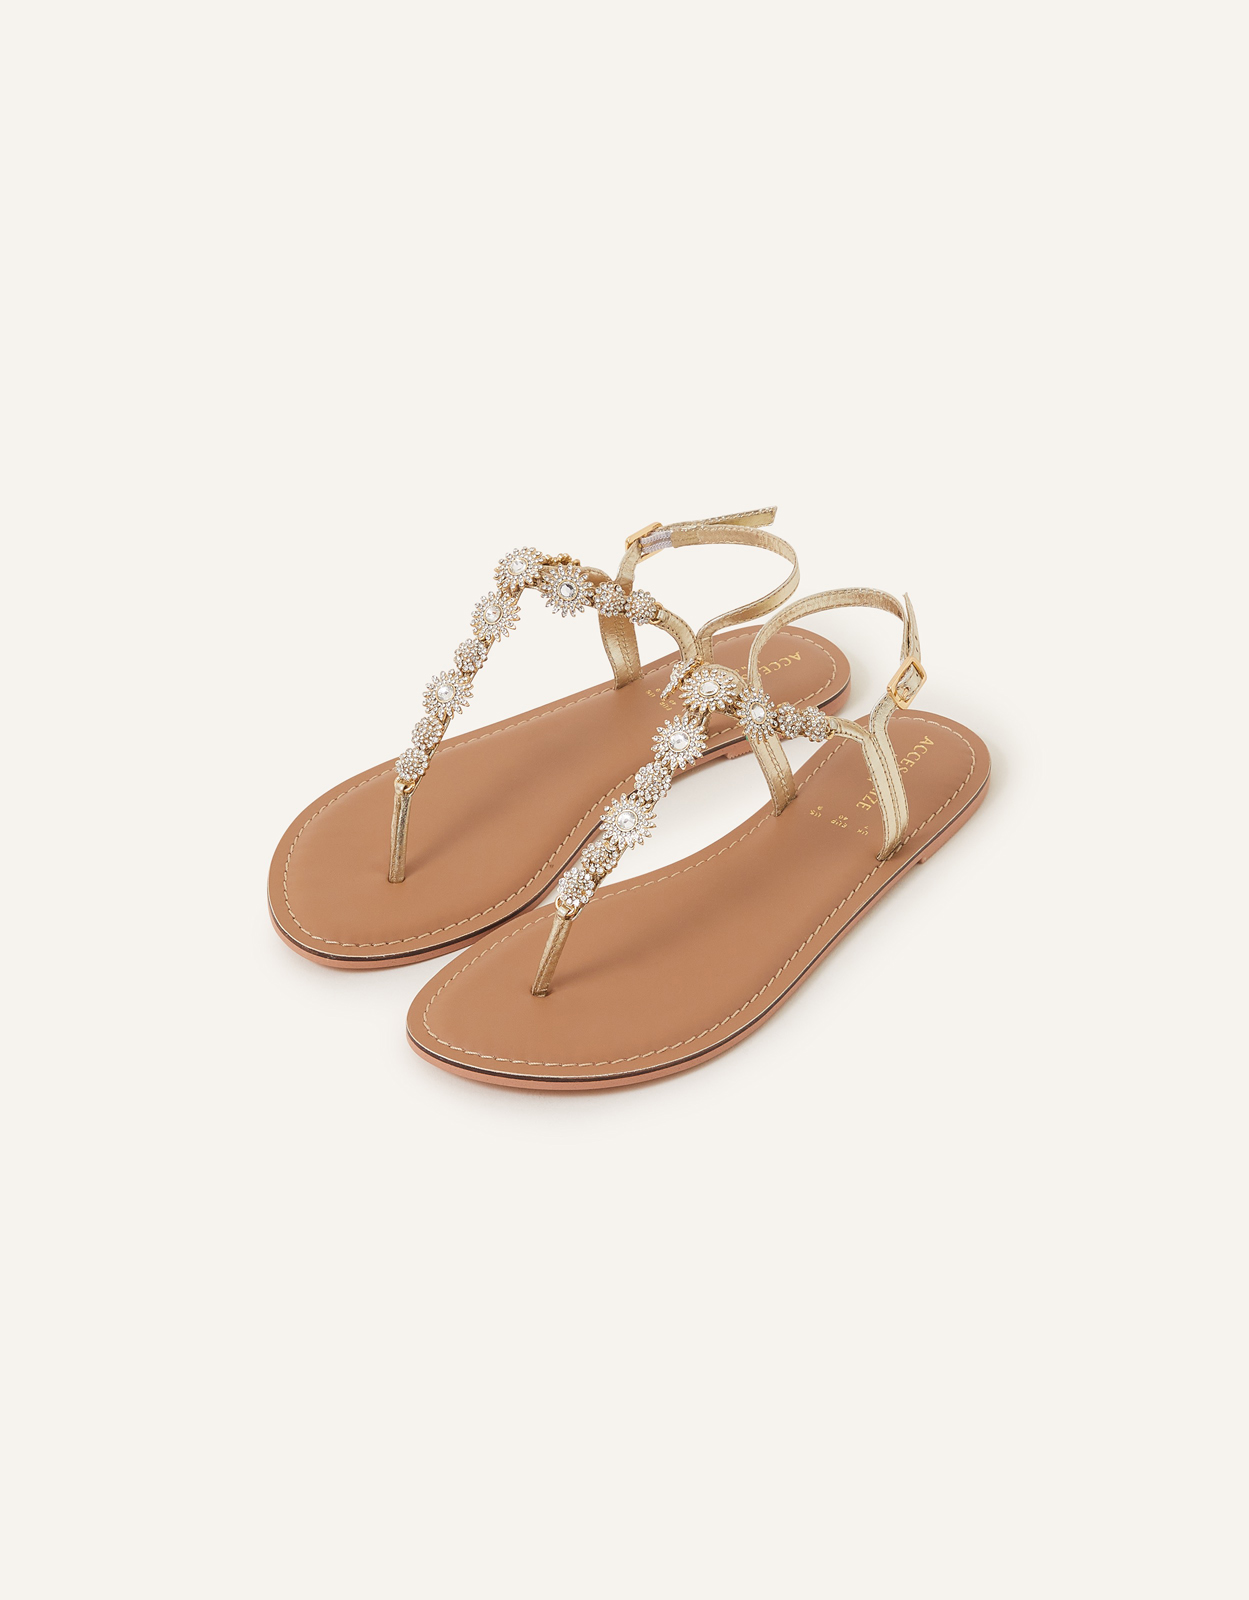 Accessorize Women's Rome Sparkle Sandals Gold, Size: 38